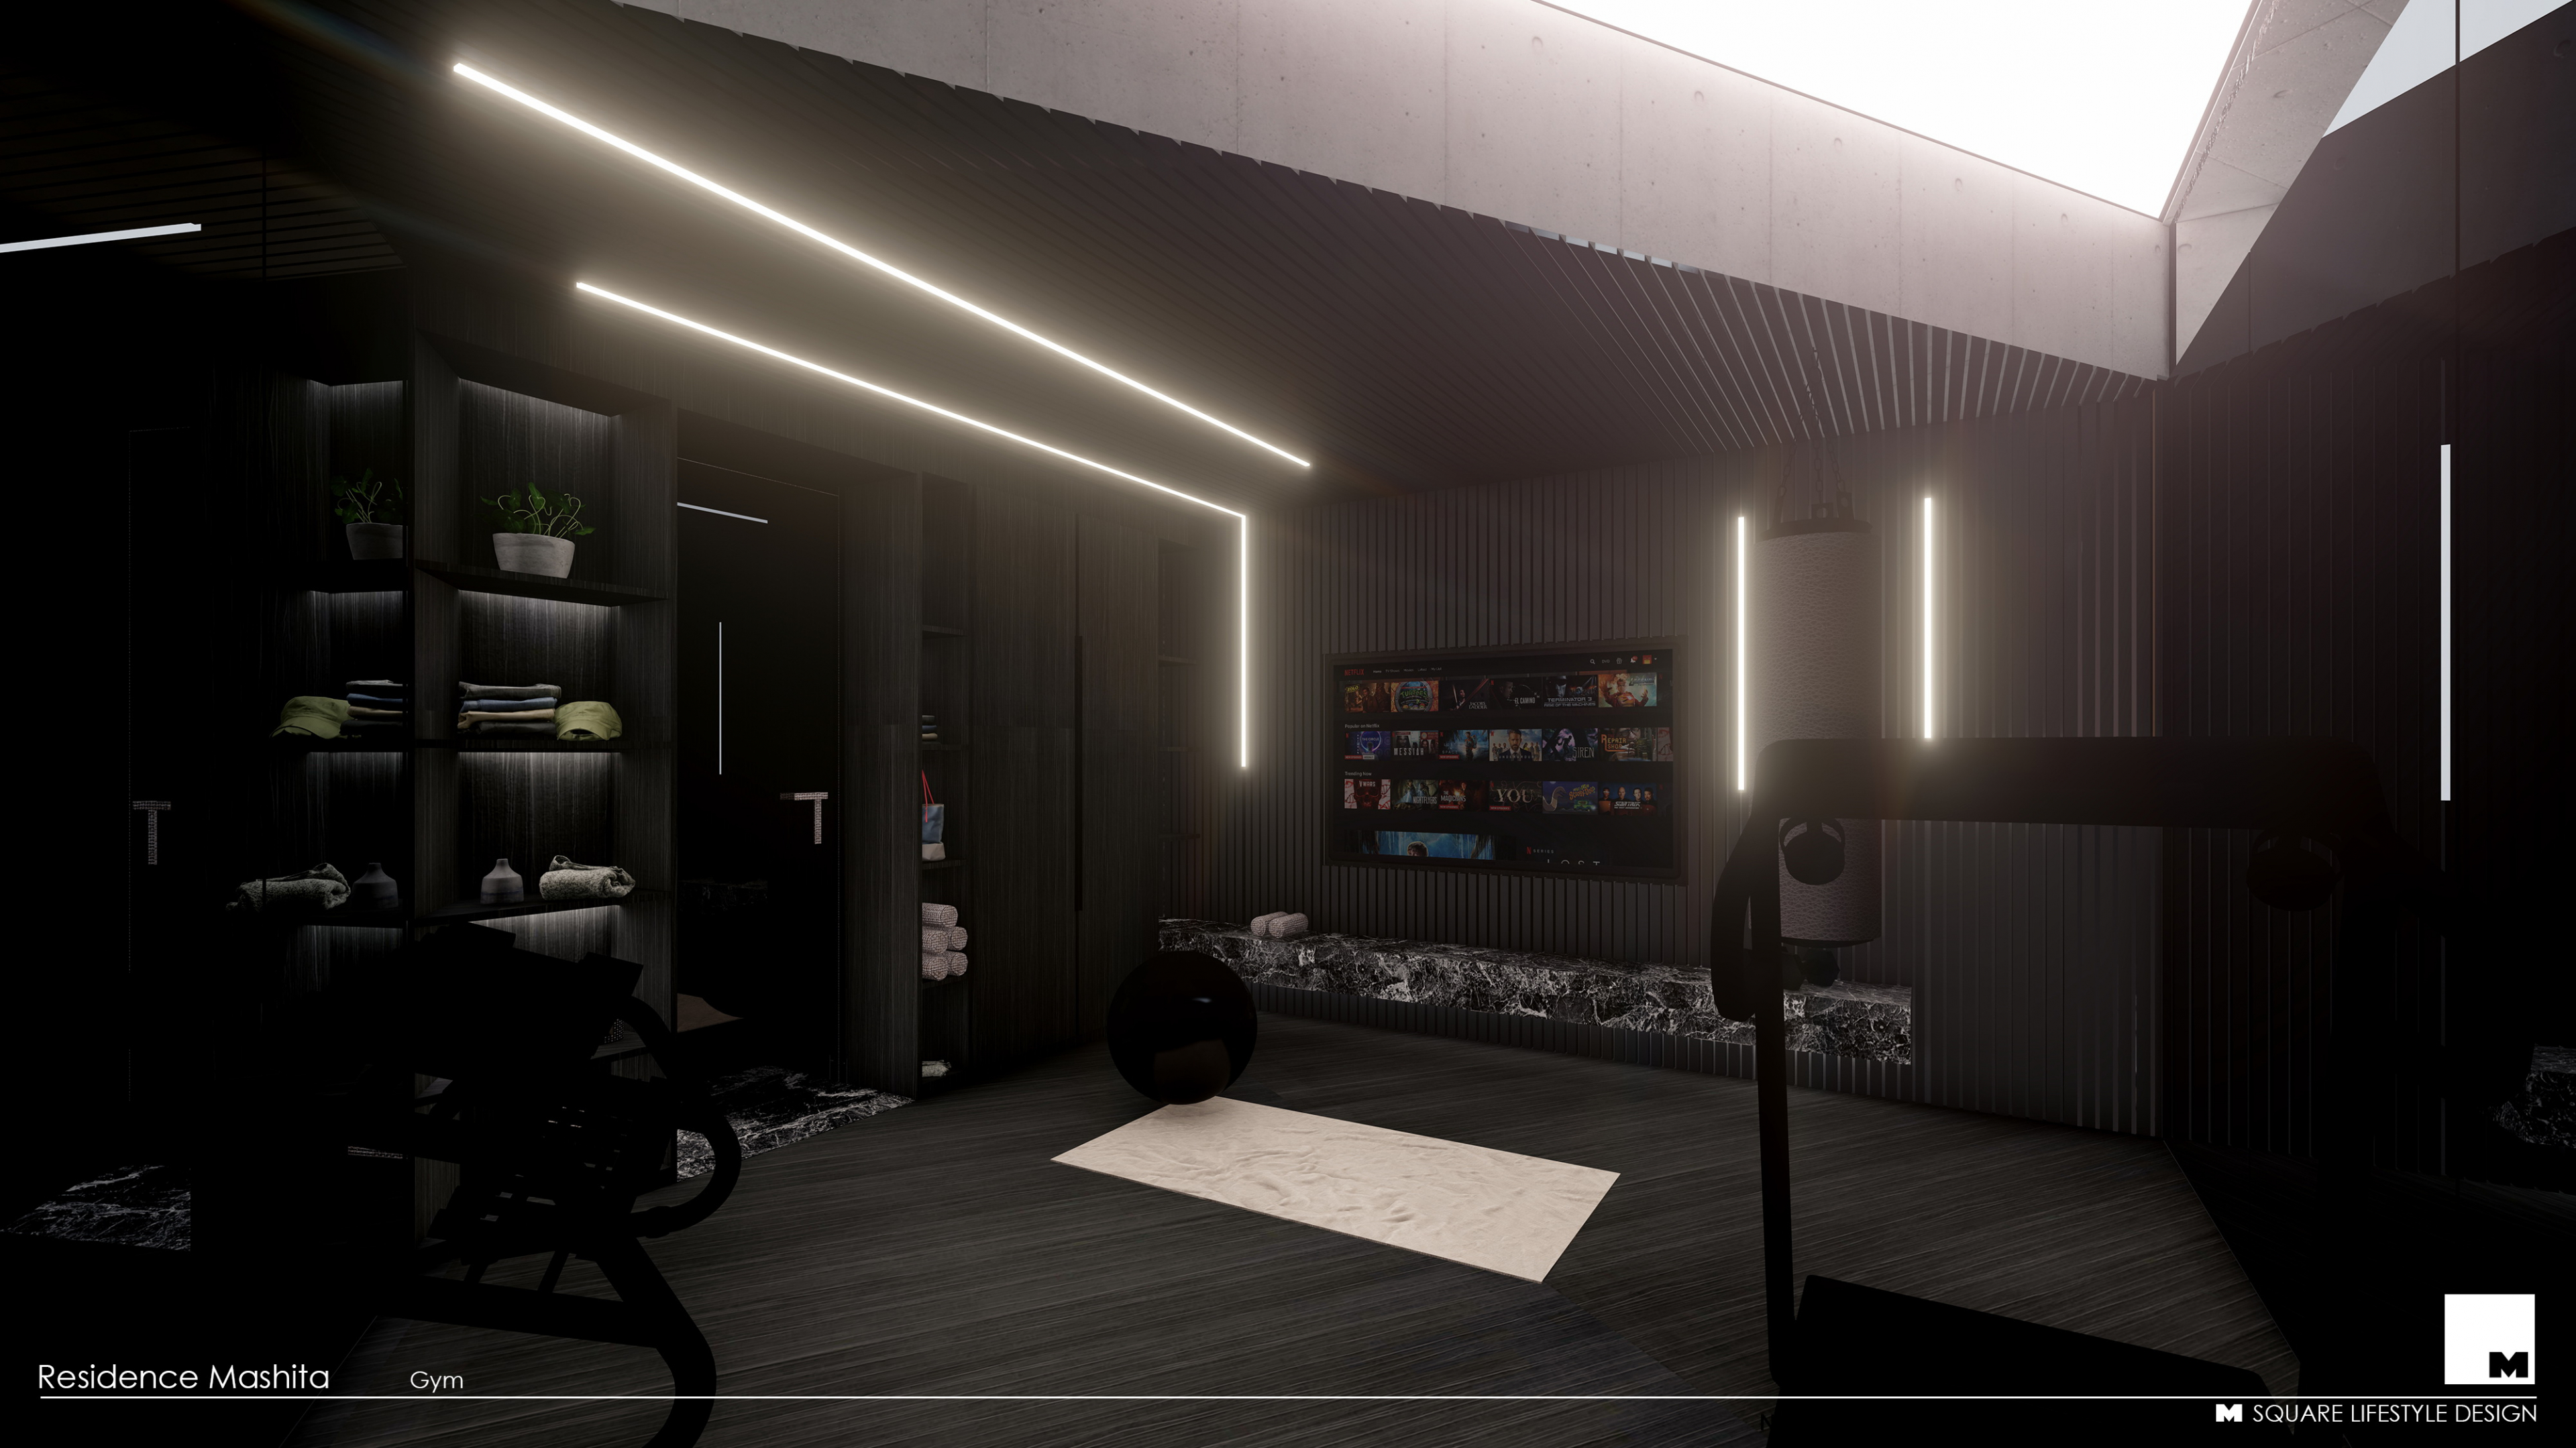 Nouveaux intérieurs de maison dans AutoCAD lux render image